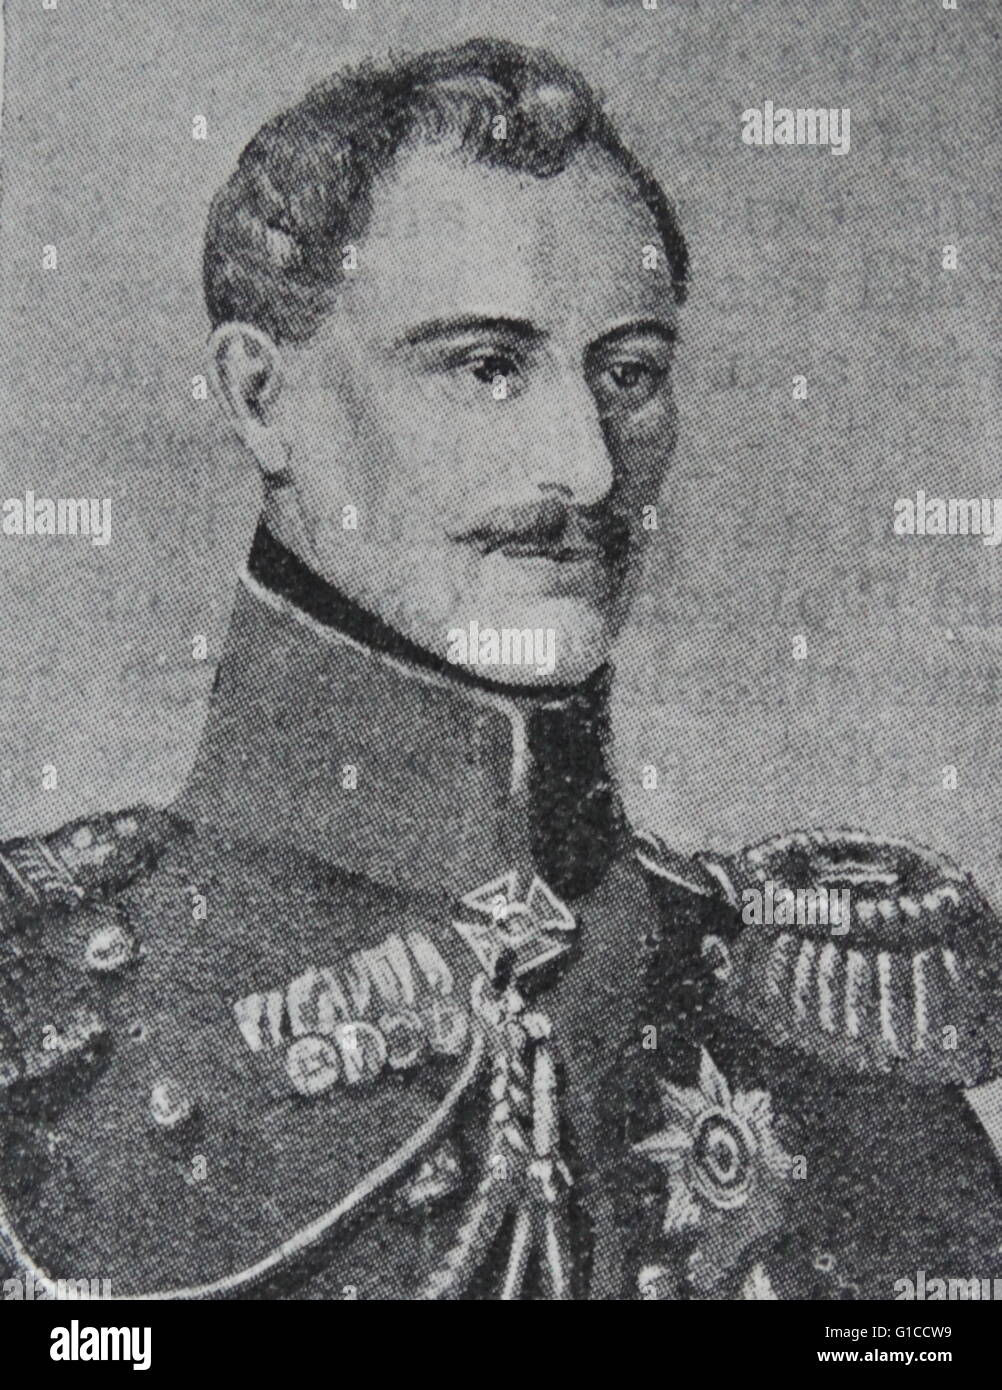 Ritratto di Alexander Sergeyevich Menšikov (1787-1869) un nobile finno-russa, comandante militare e statista. Datata del XIX secolo Foto Stock